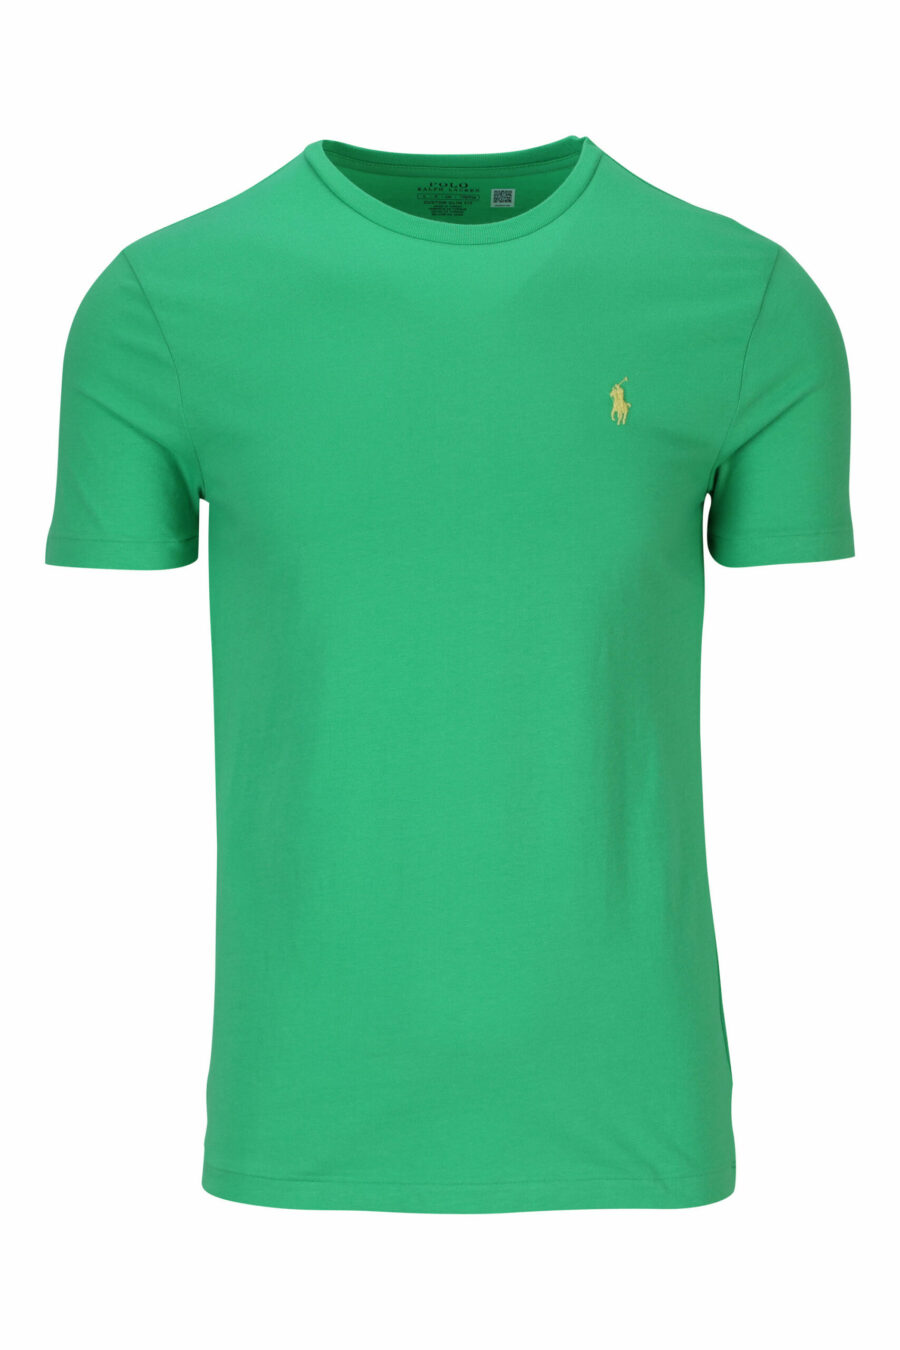 Camiseta verde y amarilla con minilogo "polo" - 3616535653825 scaled